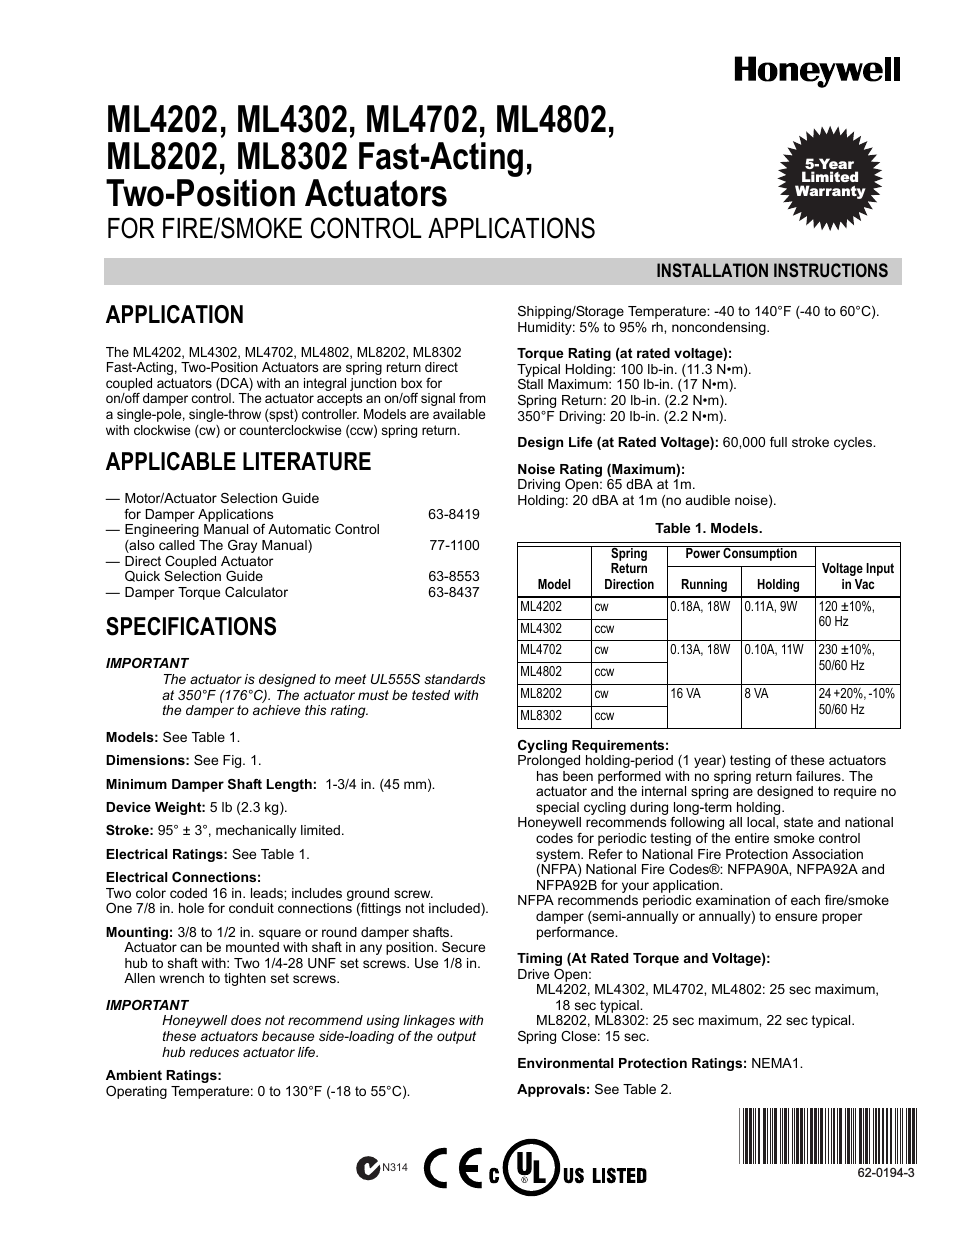 TWO-POSITION ACTUATORS ML4302